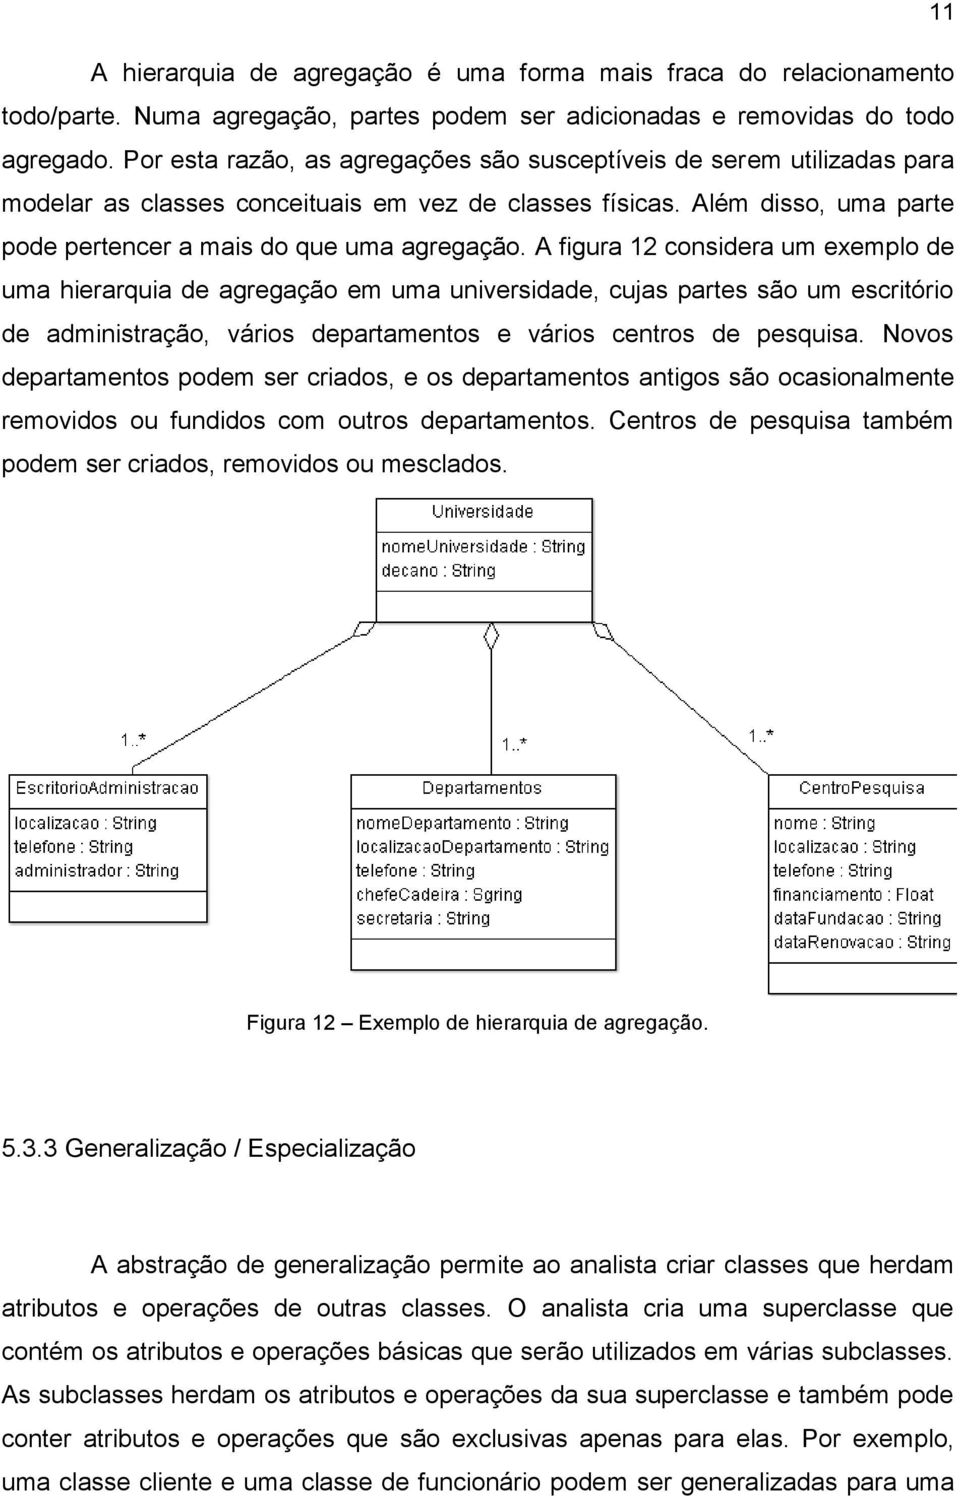 A figura 12 considera um exemplo de uma hierarquia de agregação em uma universidade, cujas partes são um escritório de administração, vários departamentos e vários centros de pesquisa.